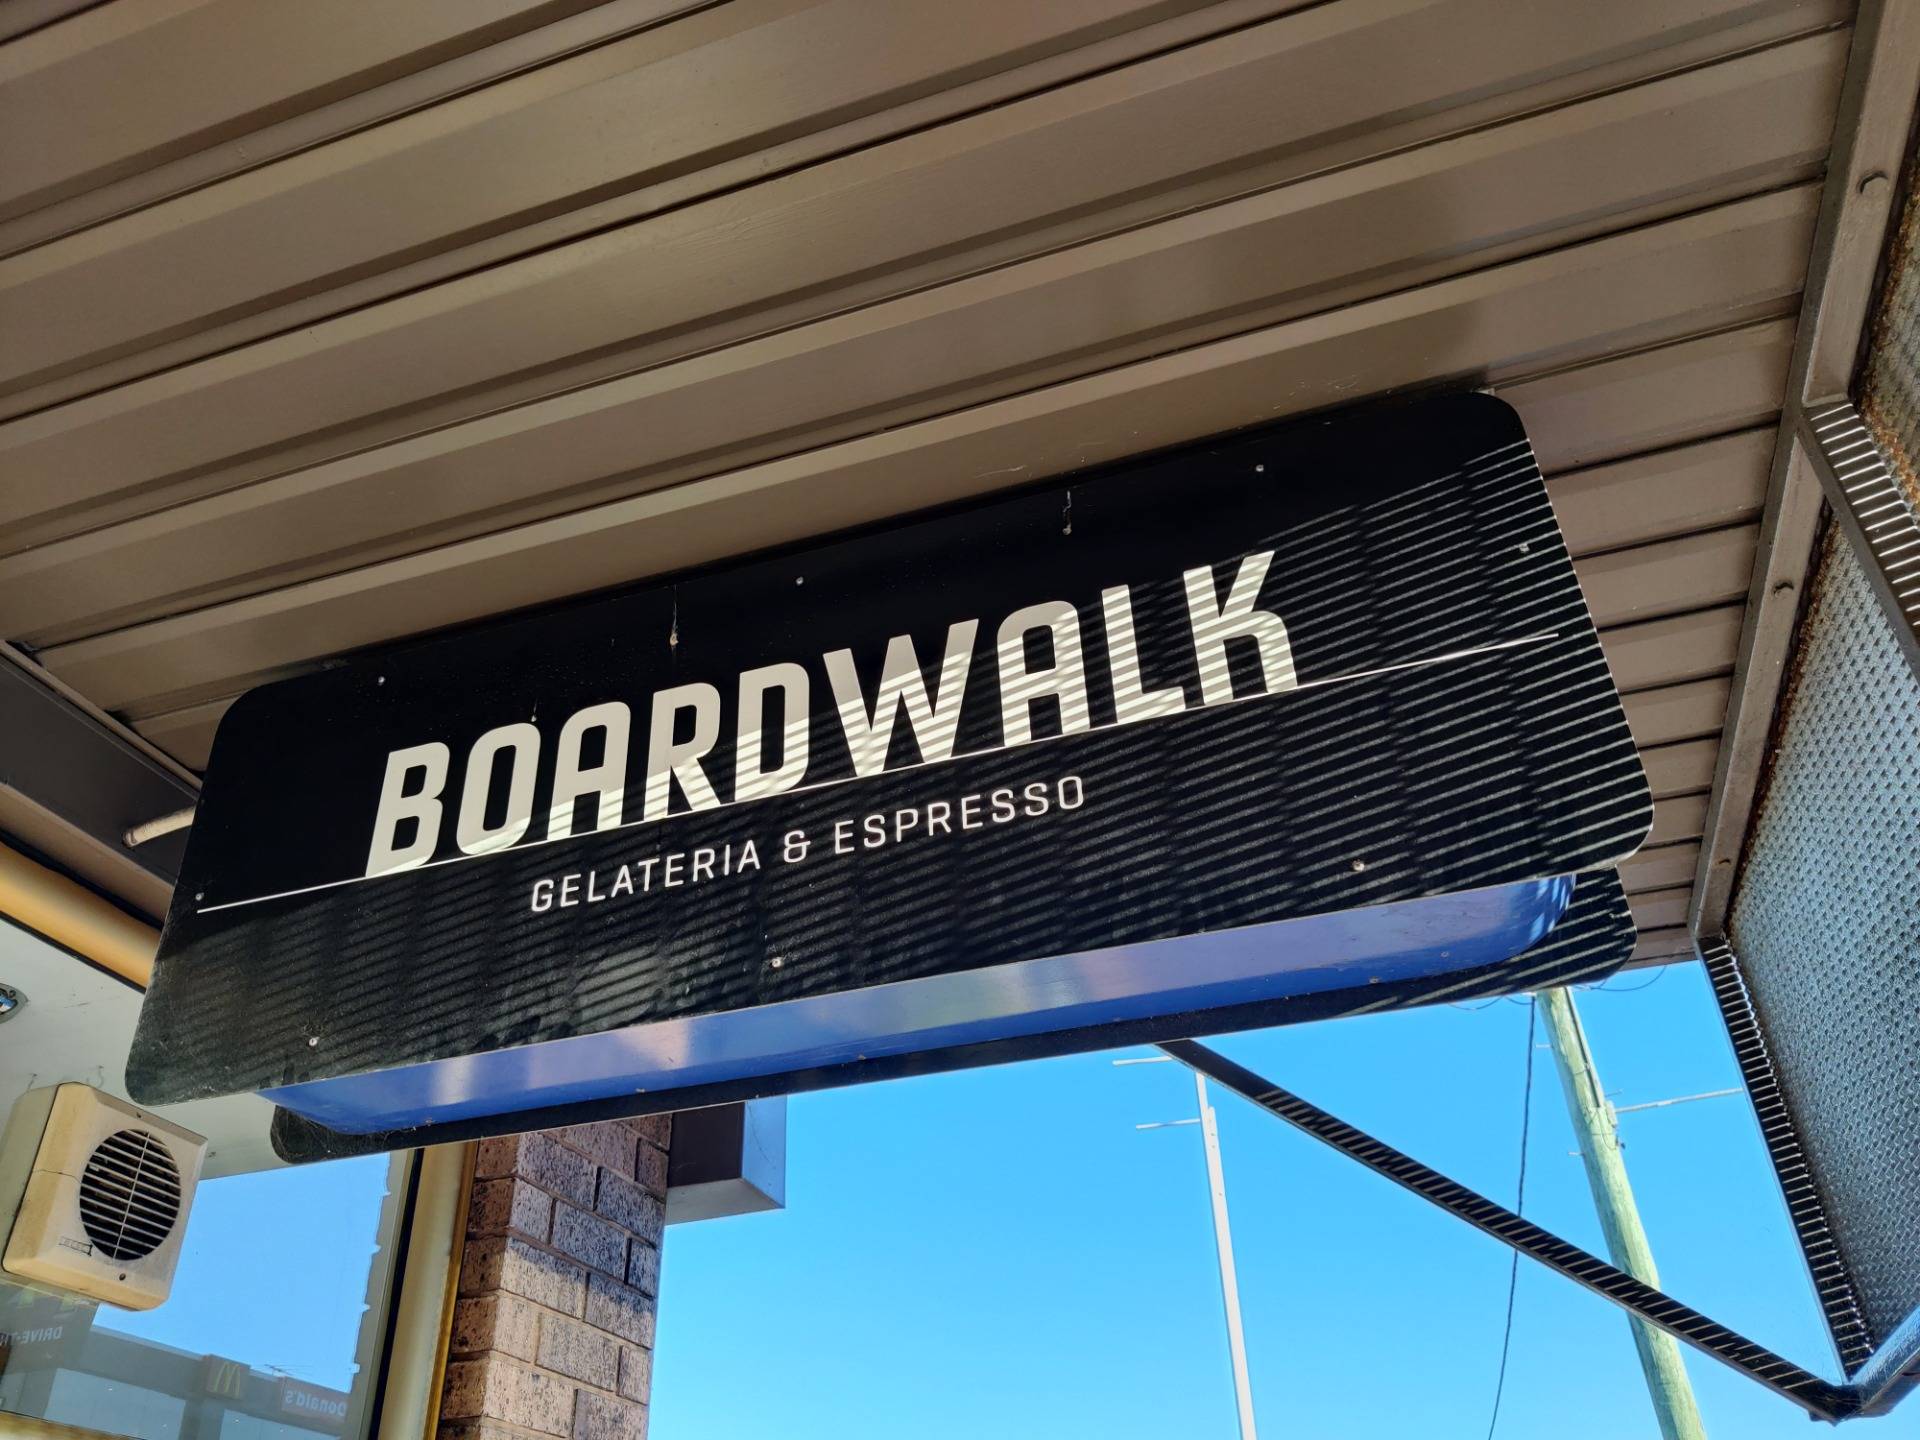 Boardwalk Gelateria And Espresso: Merimbula, AUSTRALIA